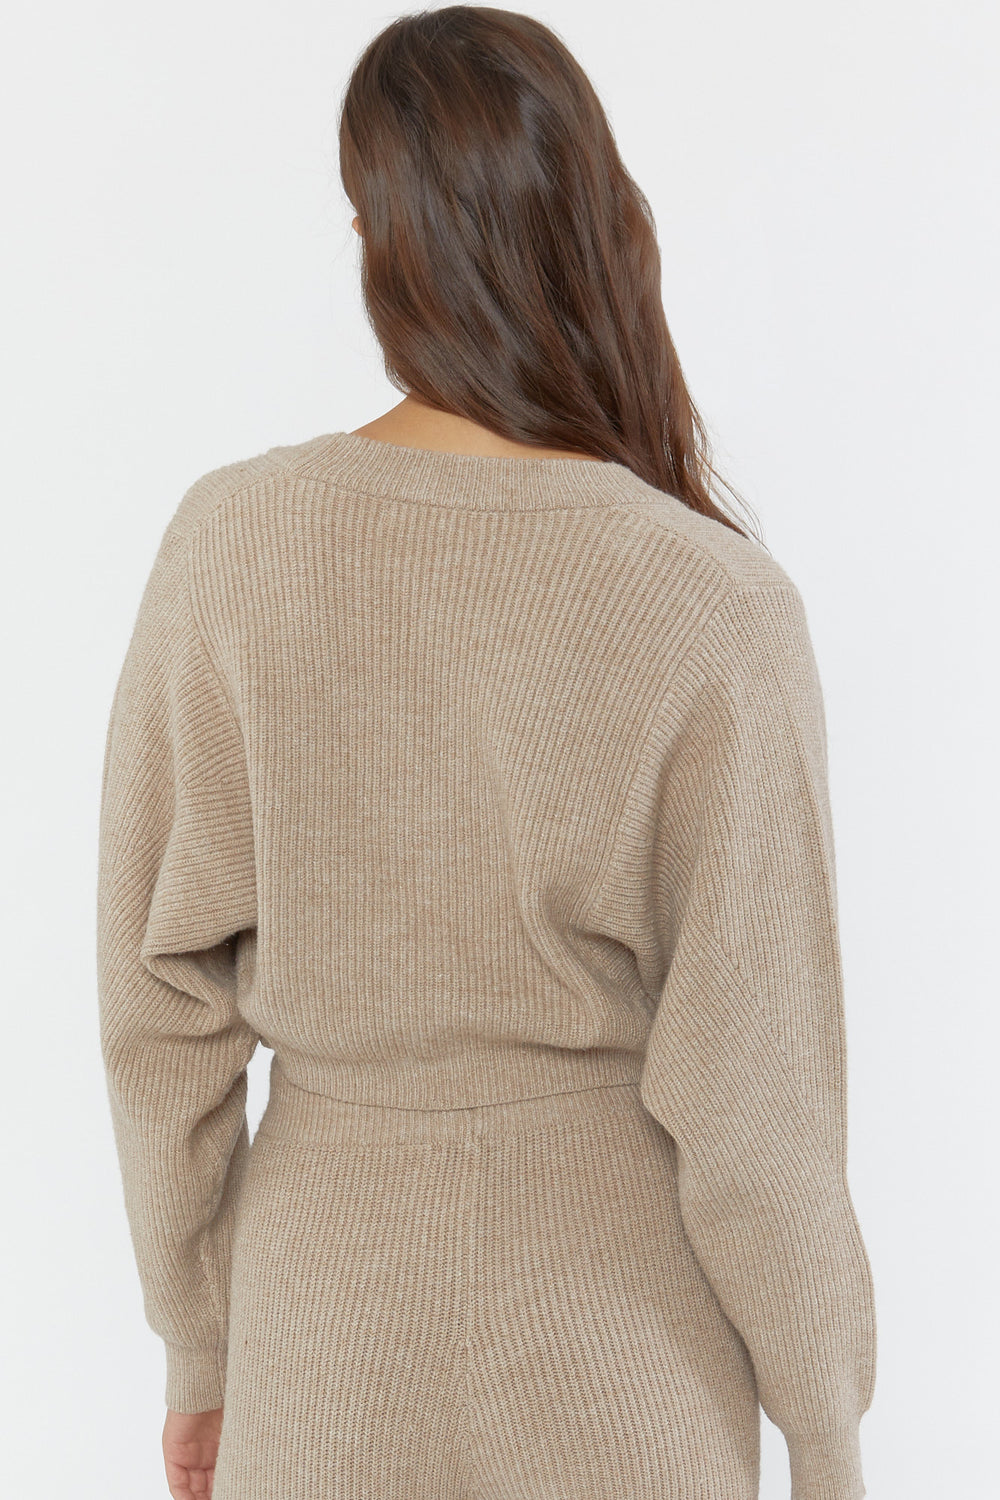 Ribbed Cami & Cardigan Sweater Set Tan